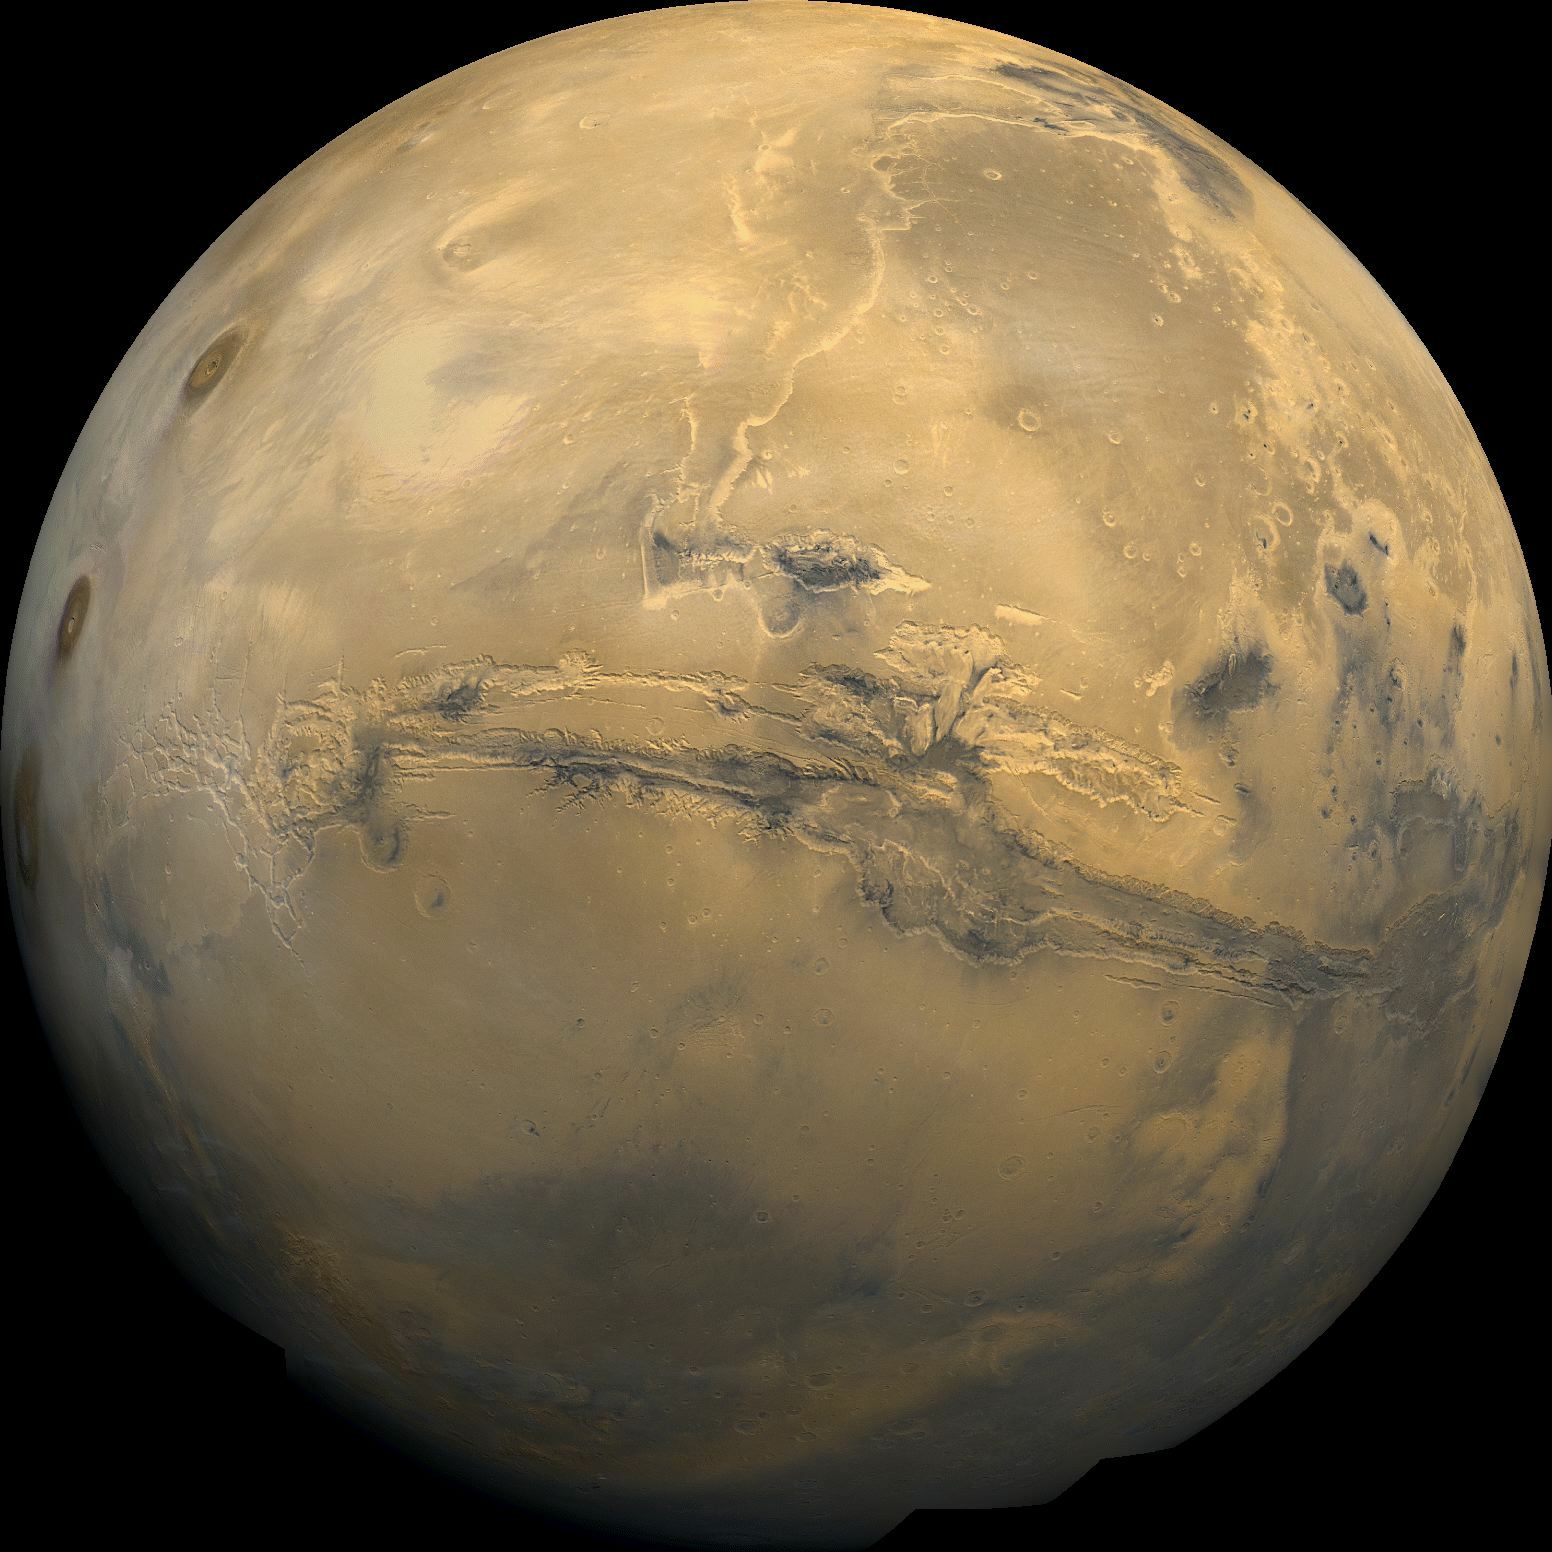 Viking, Sojourner, Spirit, Opportunity et bientôt Curiosity : la planète Mars fait toujours recette. © Nasa